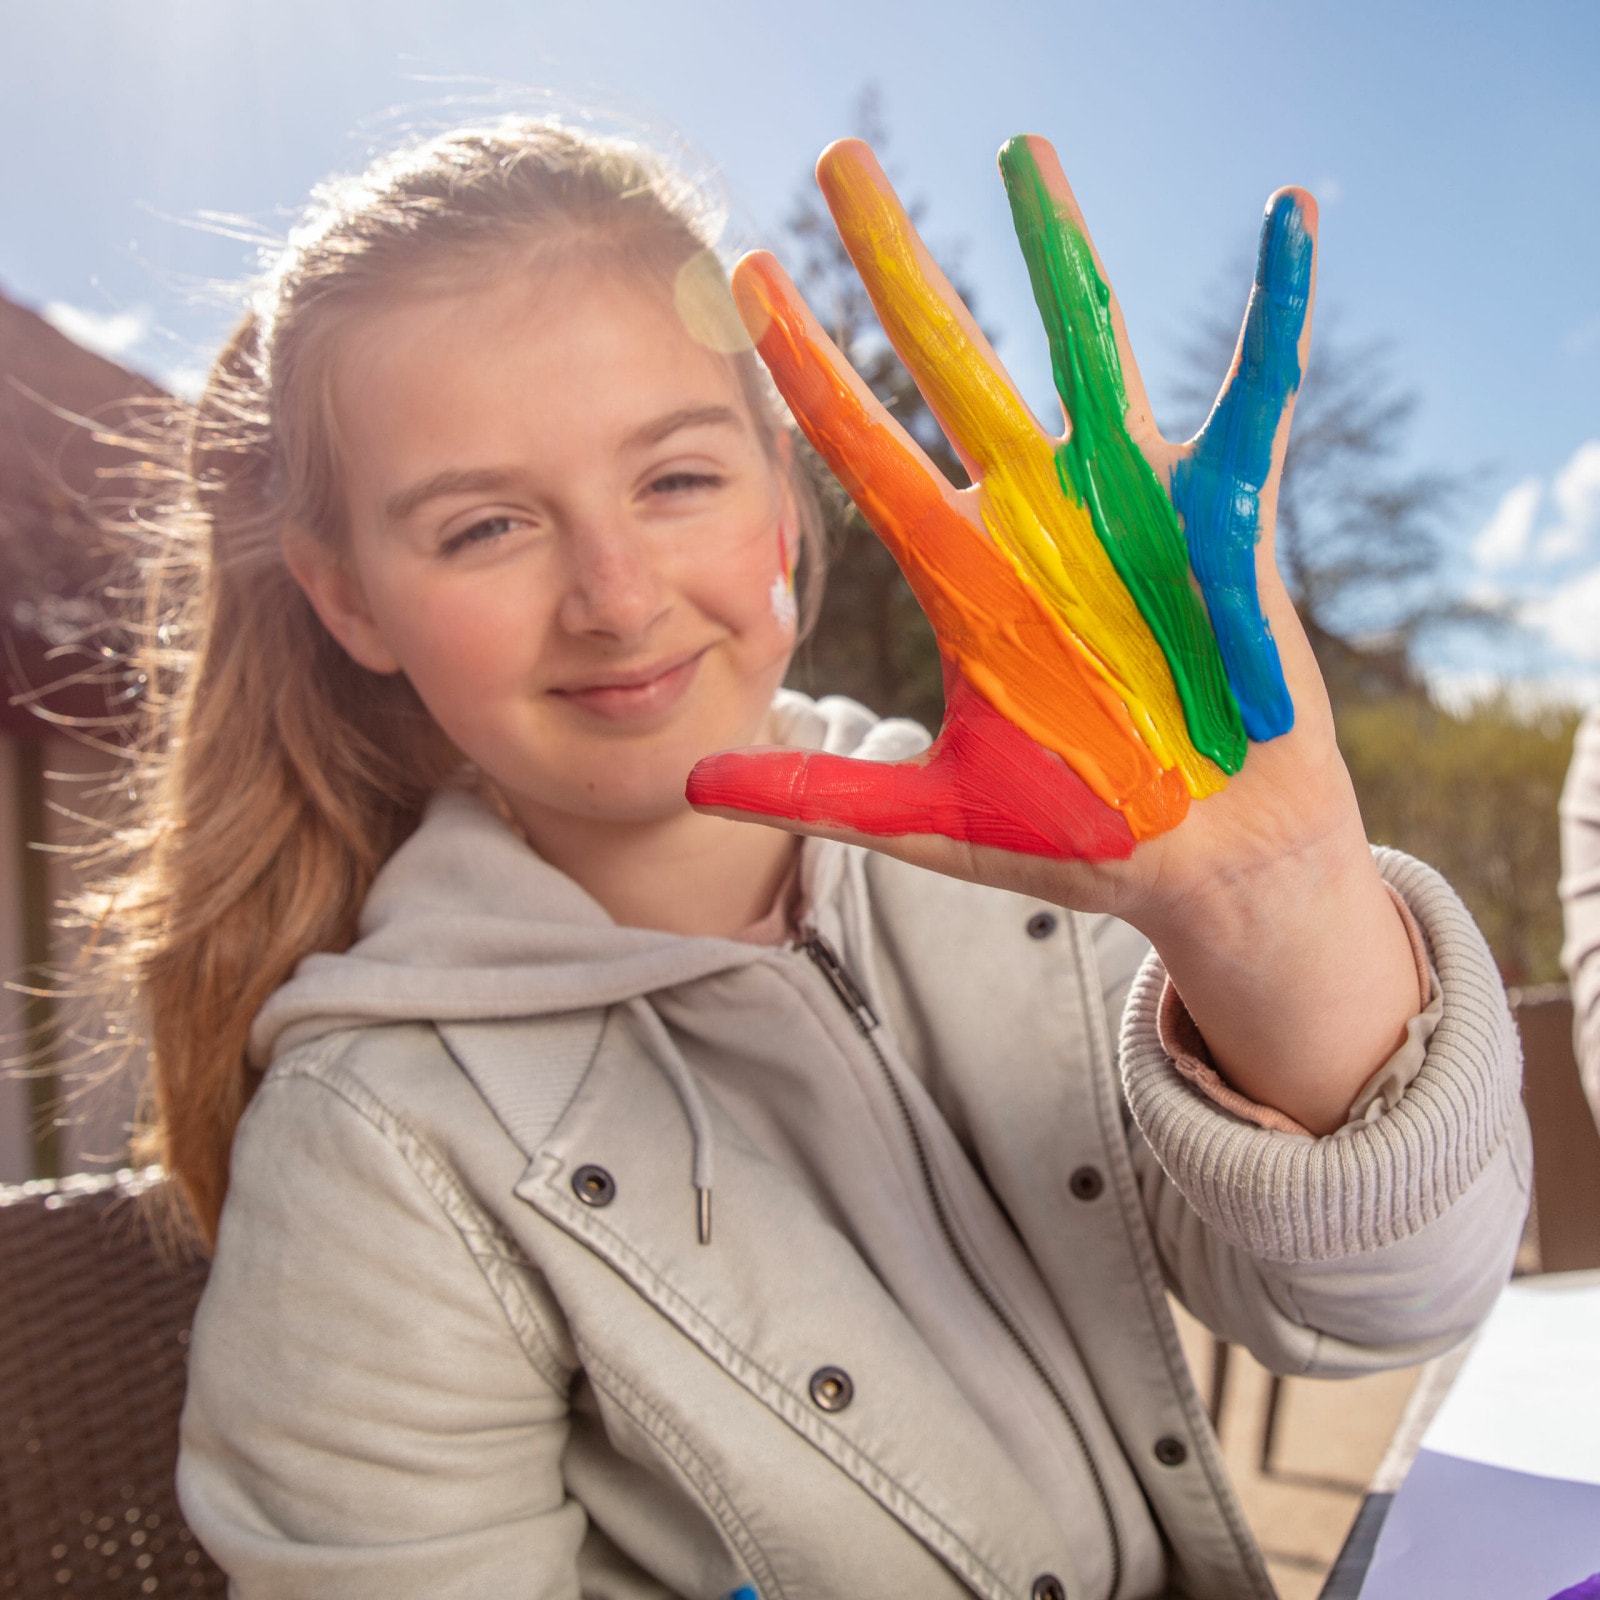 Mädchen mit Fingerfarben in bunten Farben